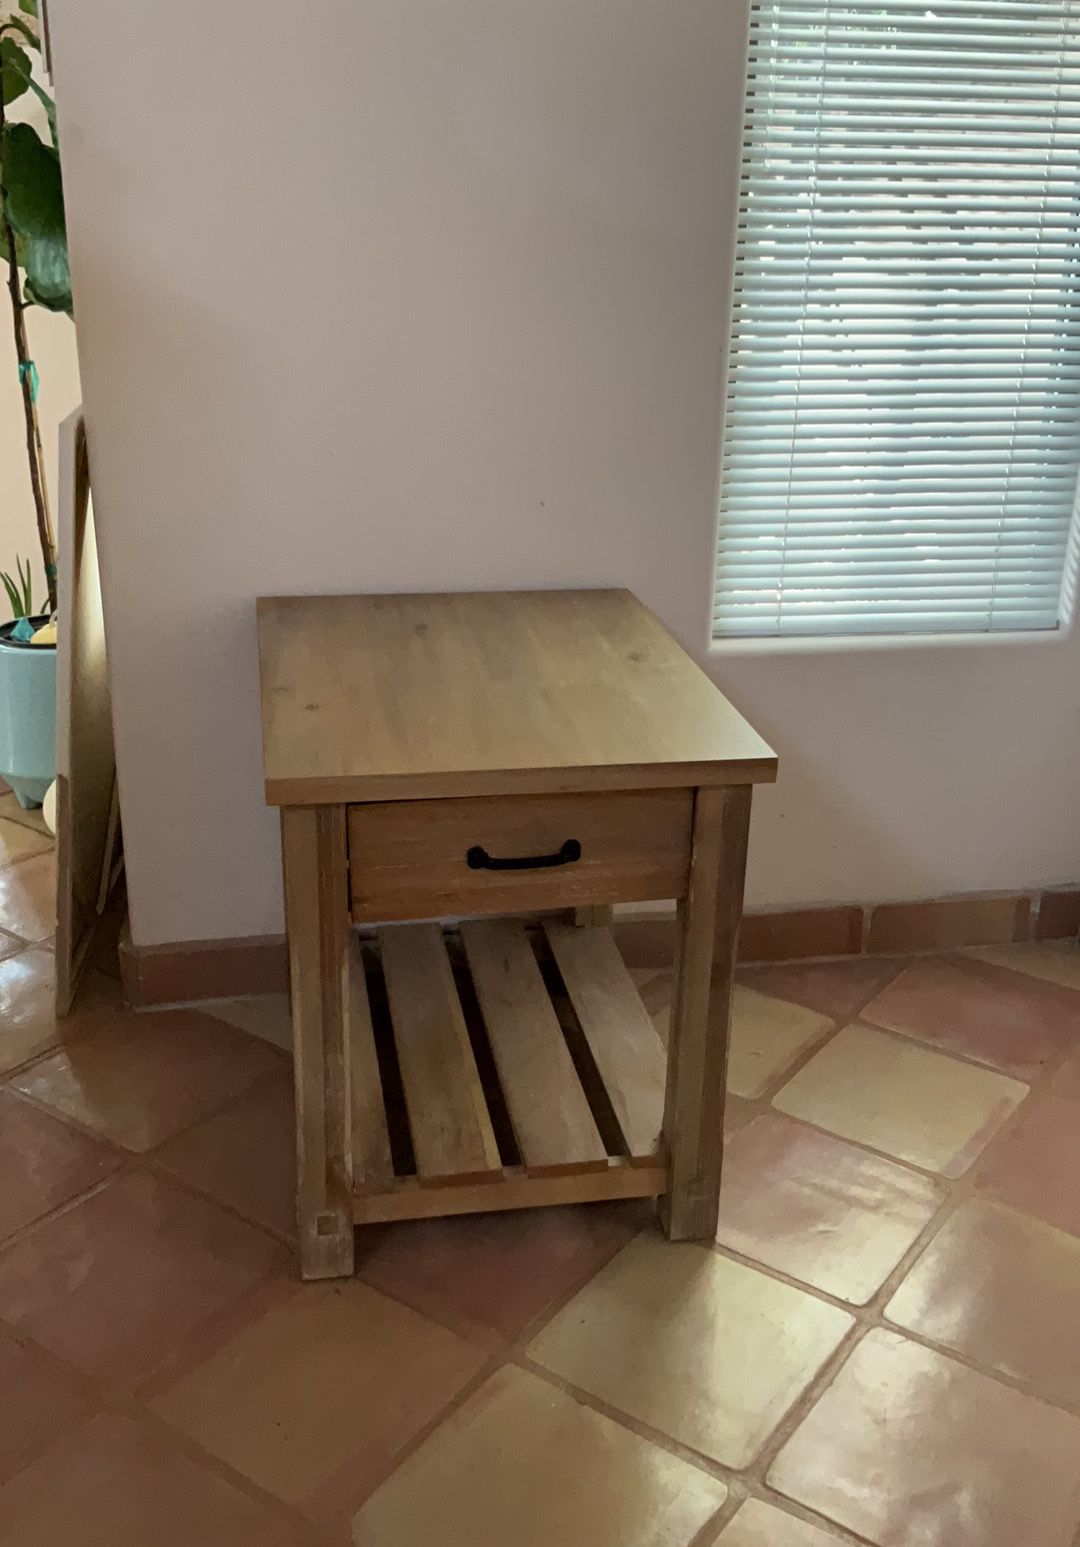 Fairmont Designs Wooden End Table